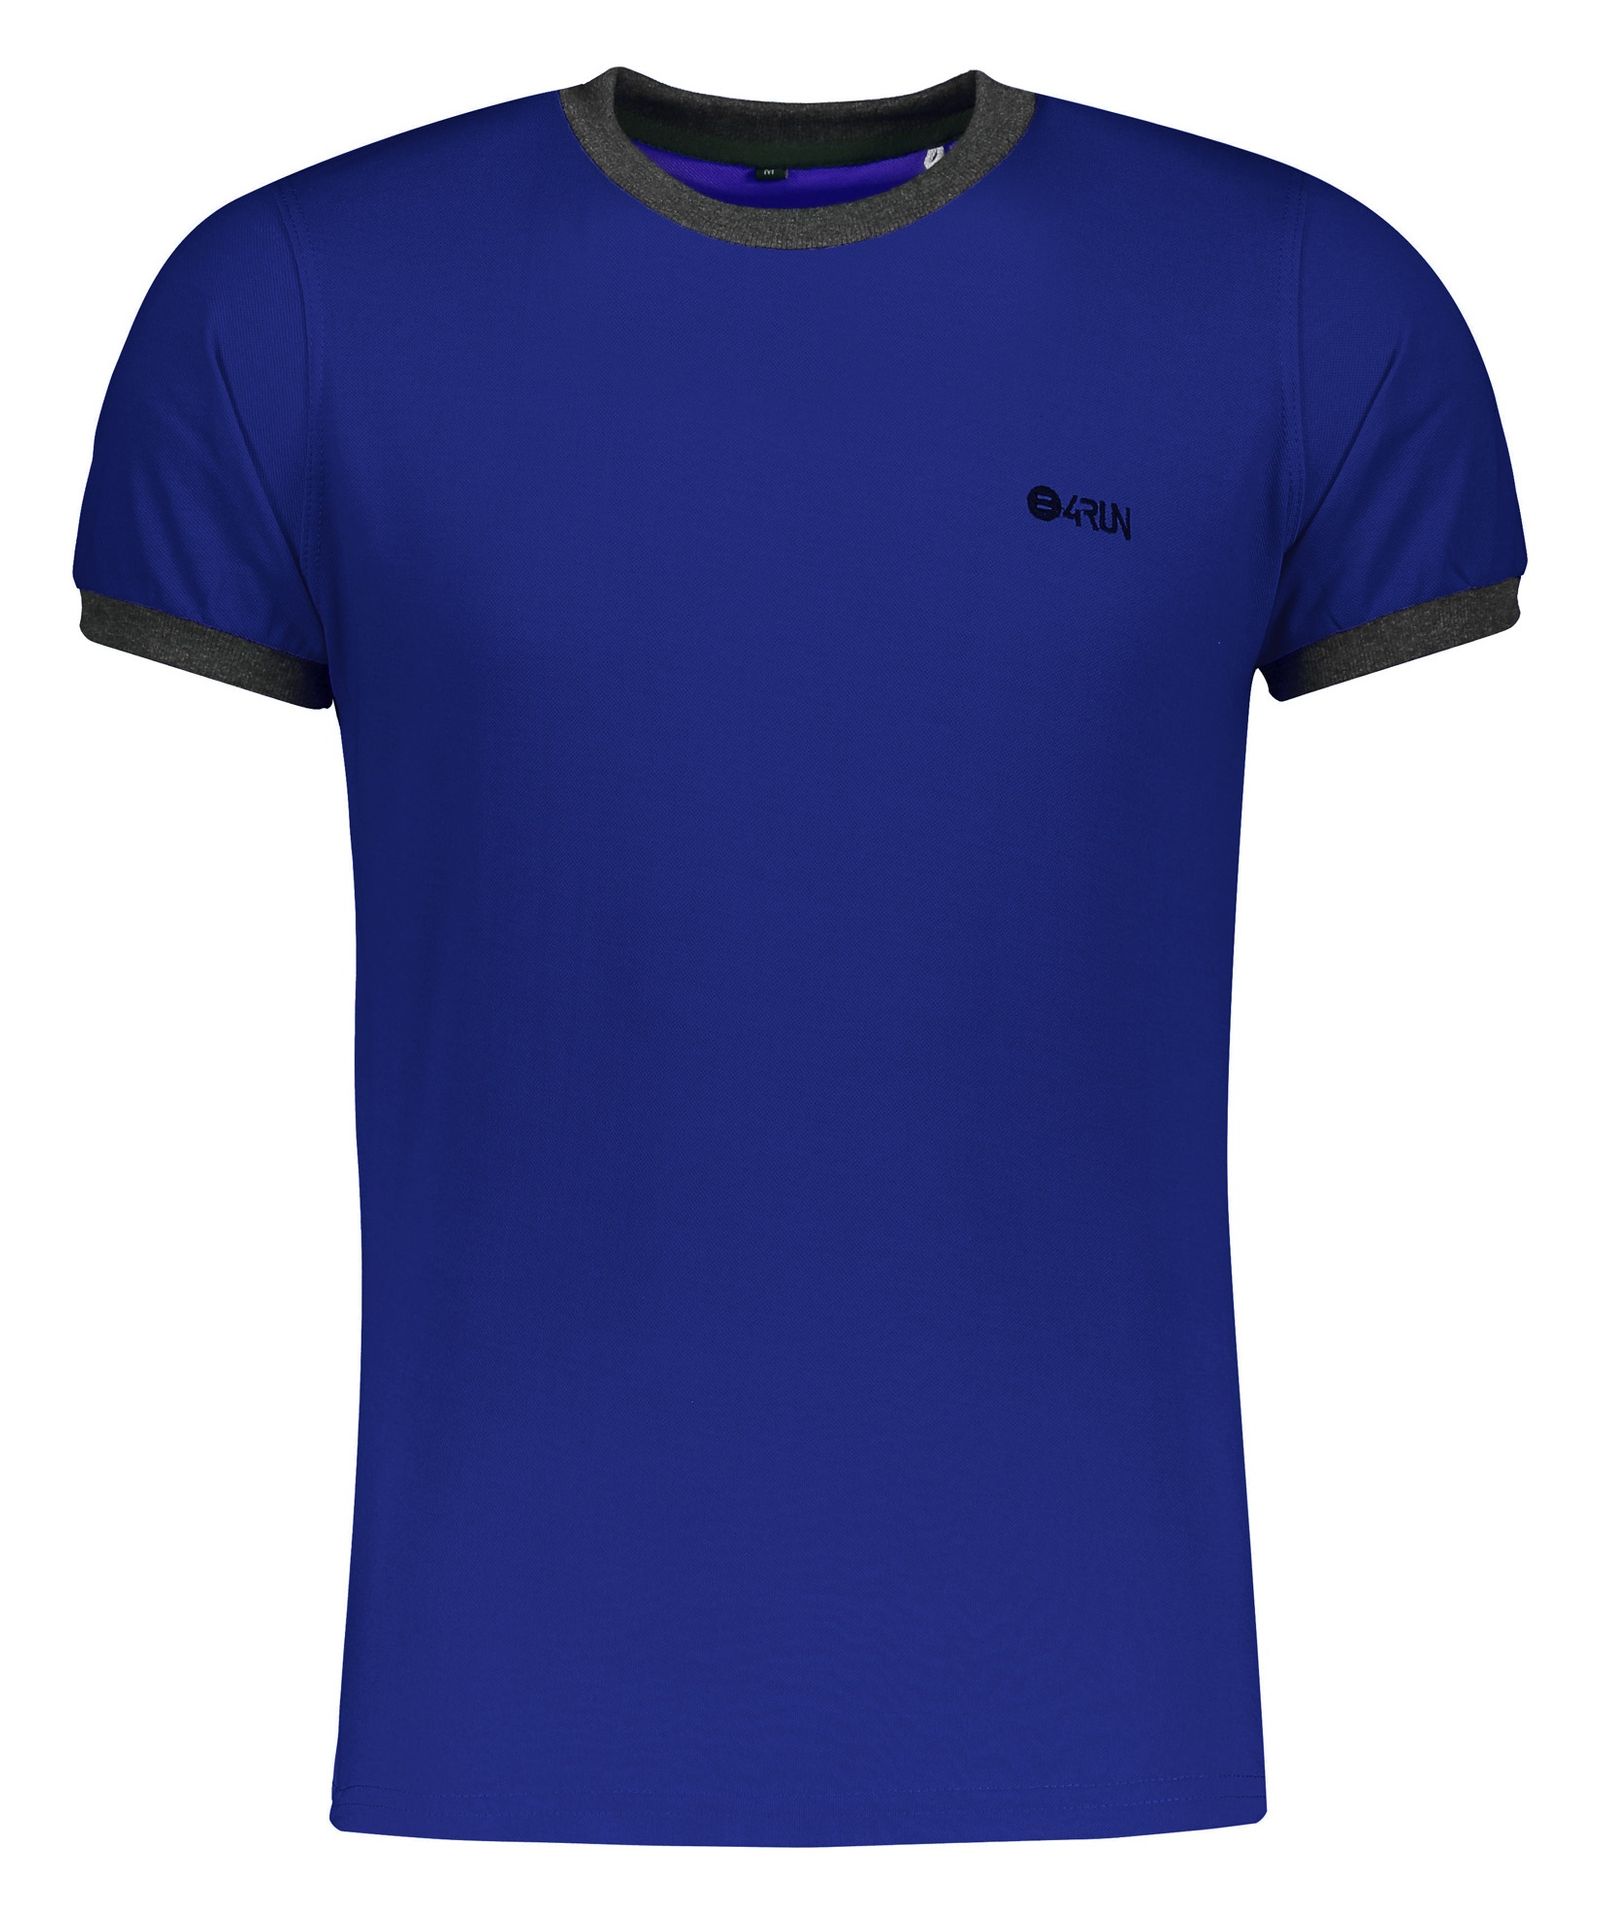 تی شرت ورزشی مردانه بی فور ران مدل 980311-58 - آبی - 2